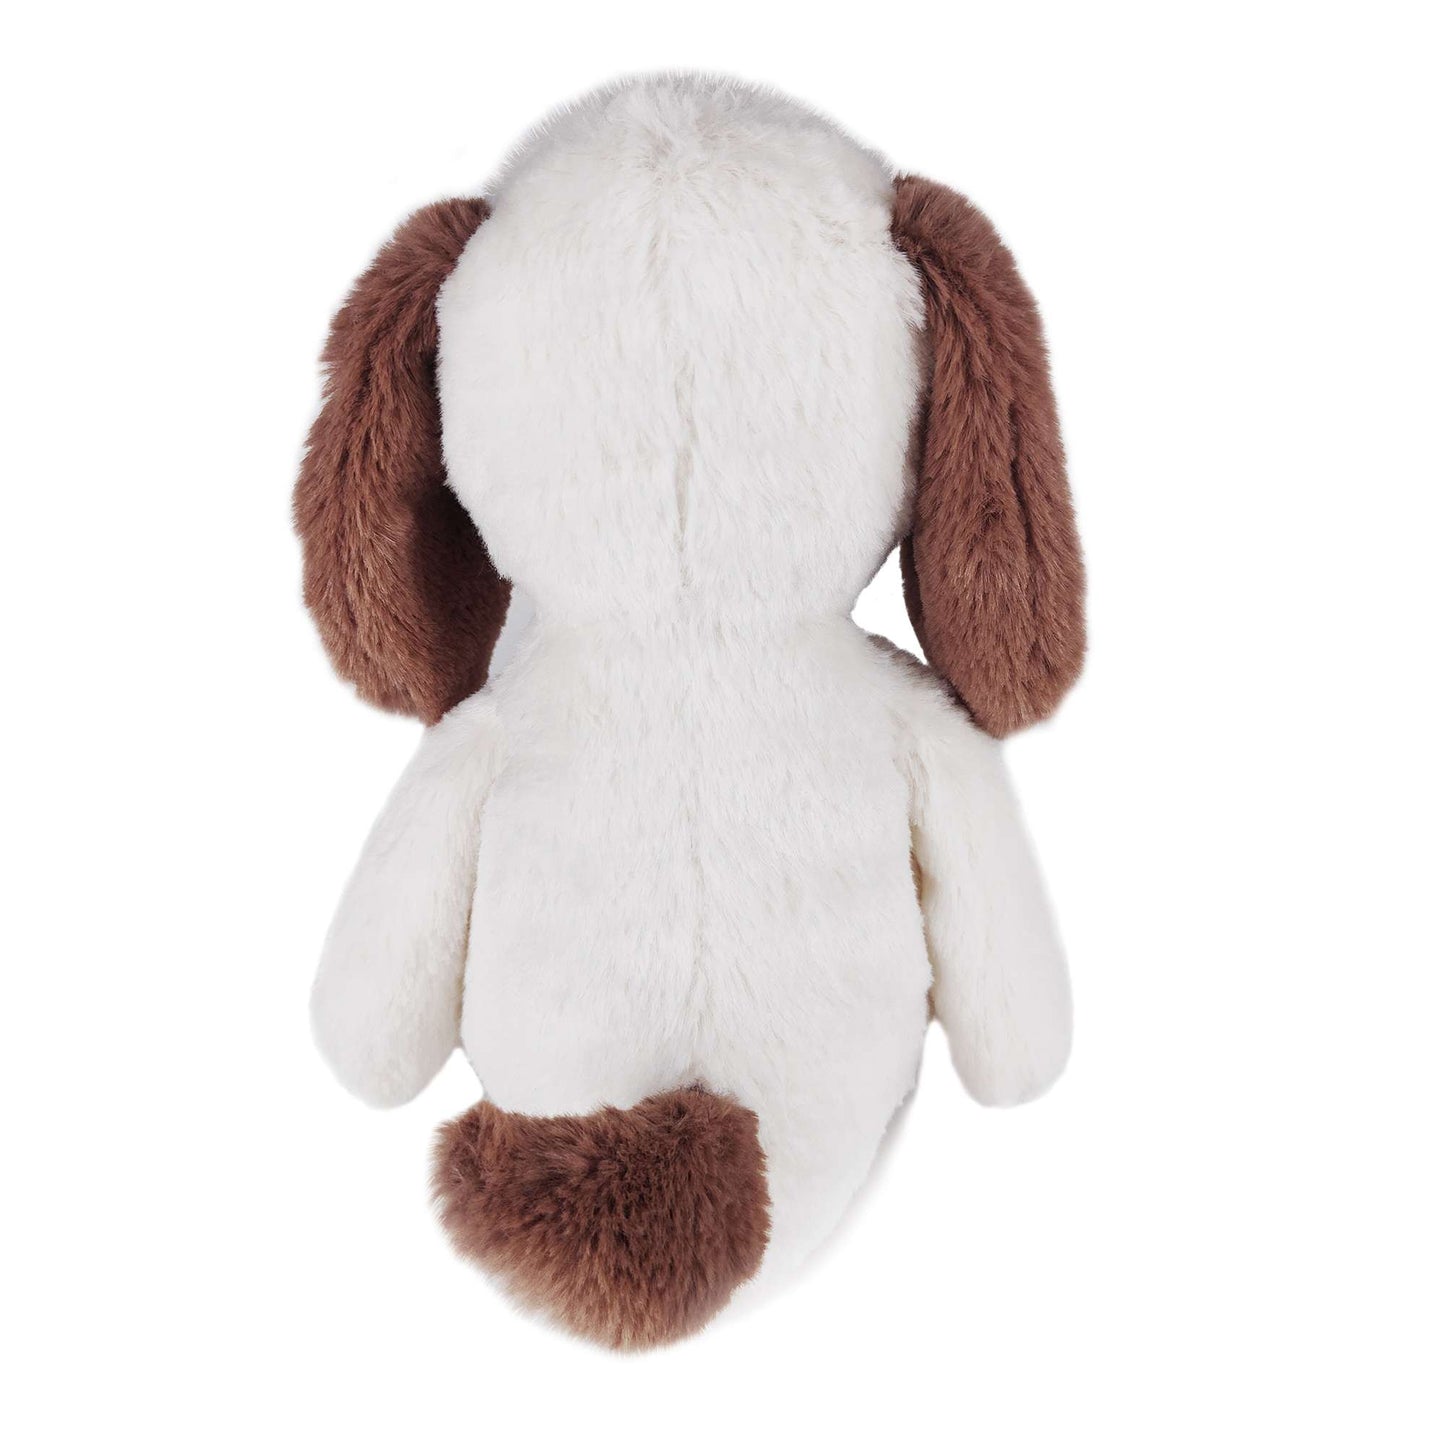 brown ears stuffed dog back